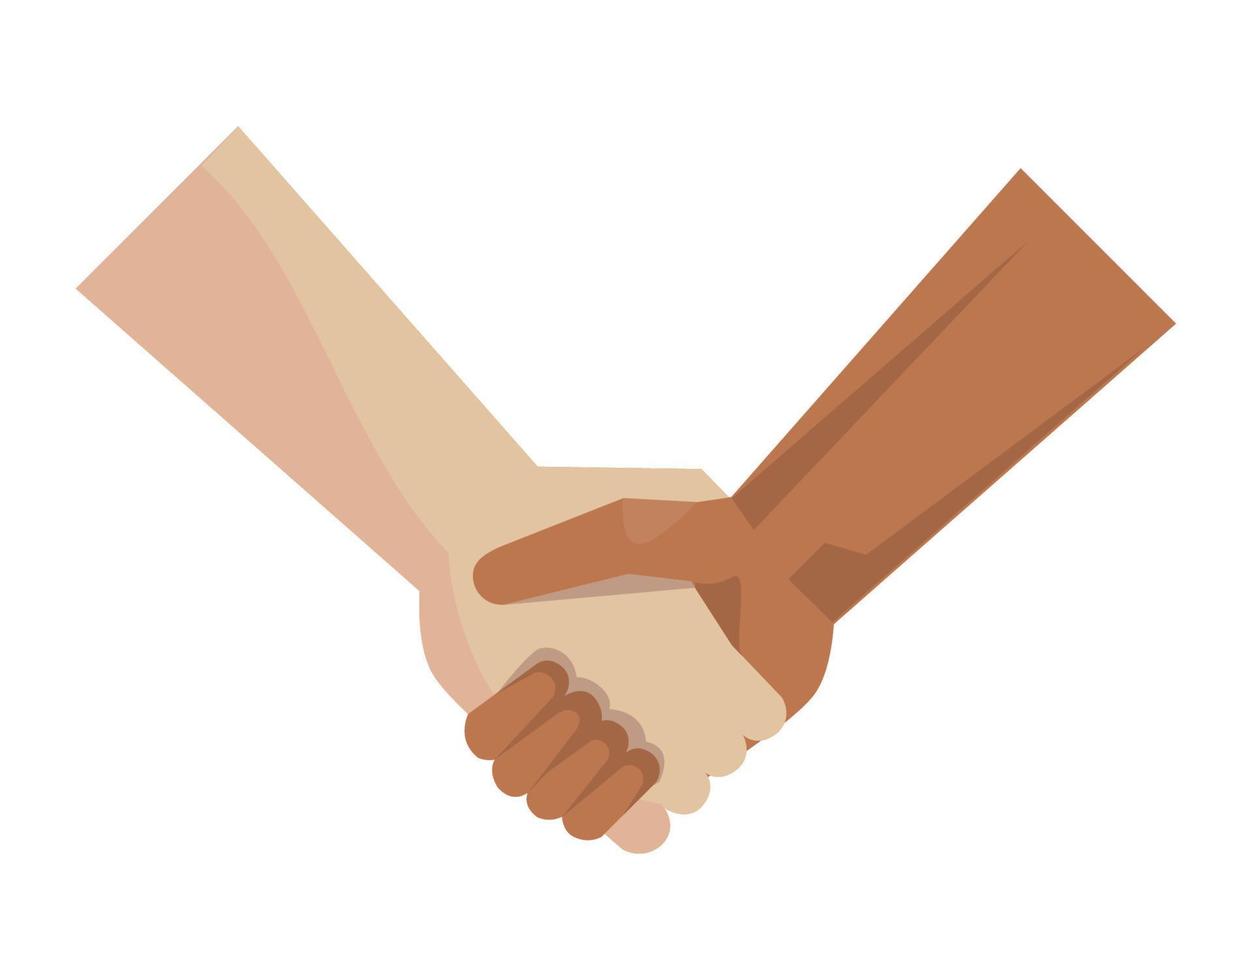 interracial handshake symbol vector